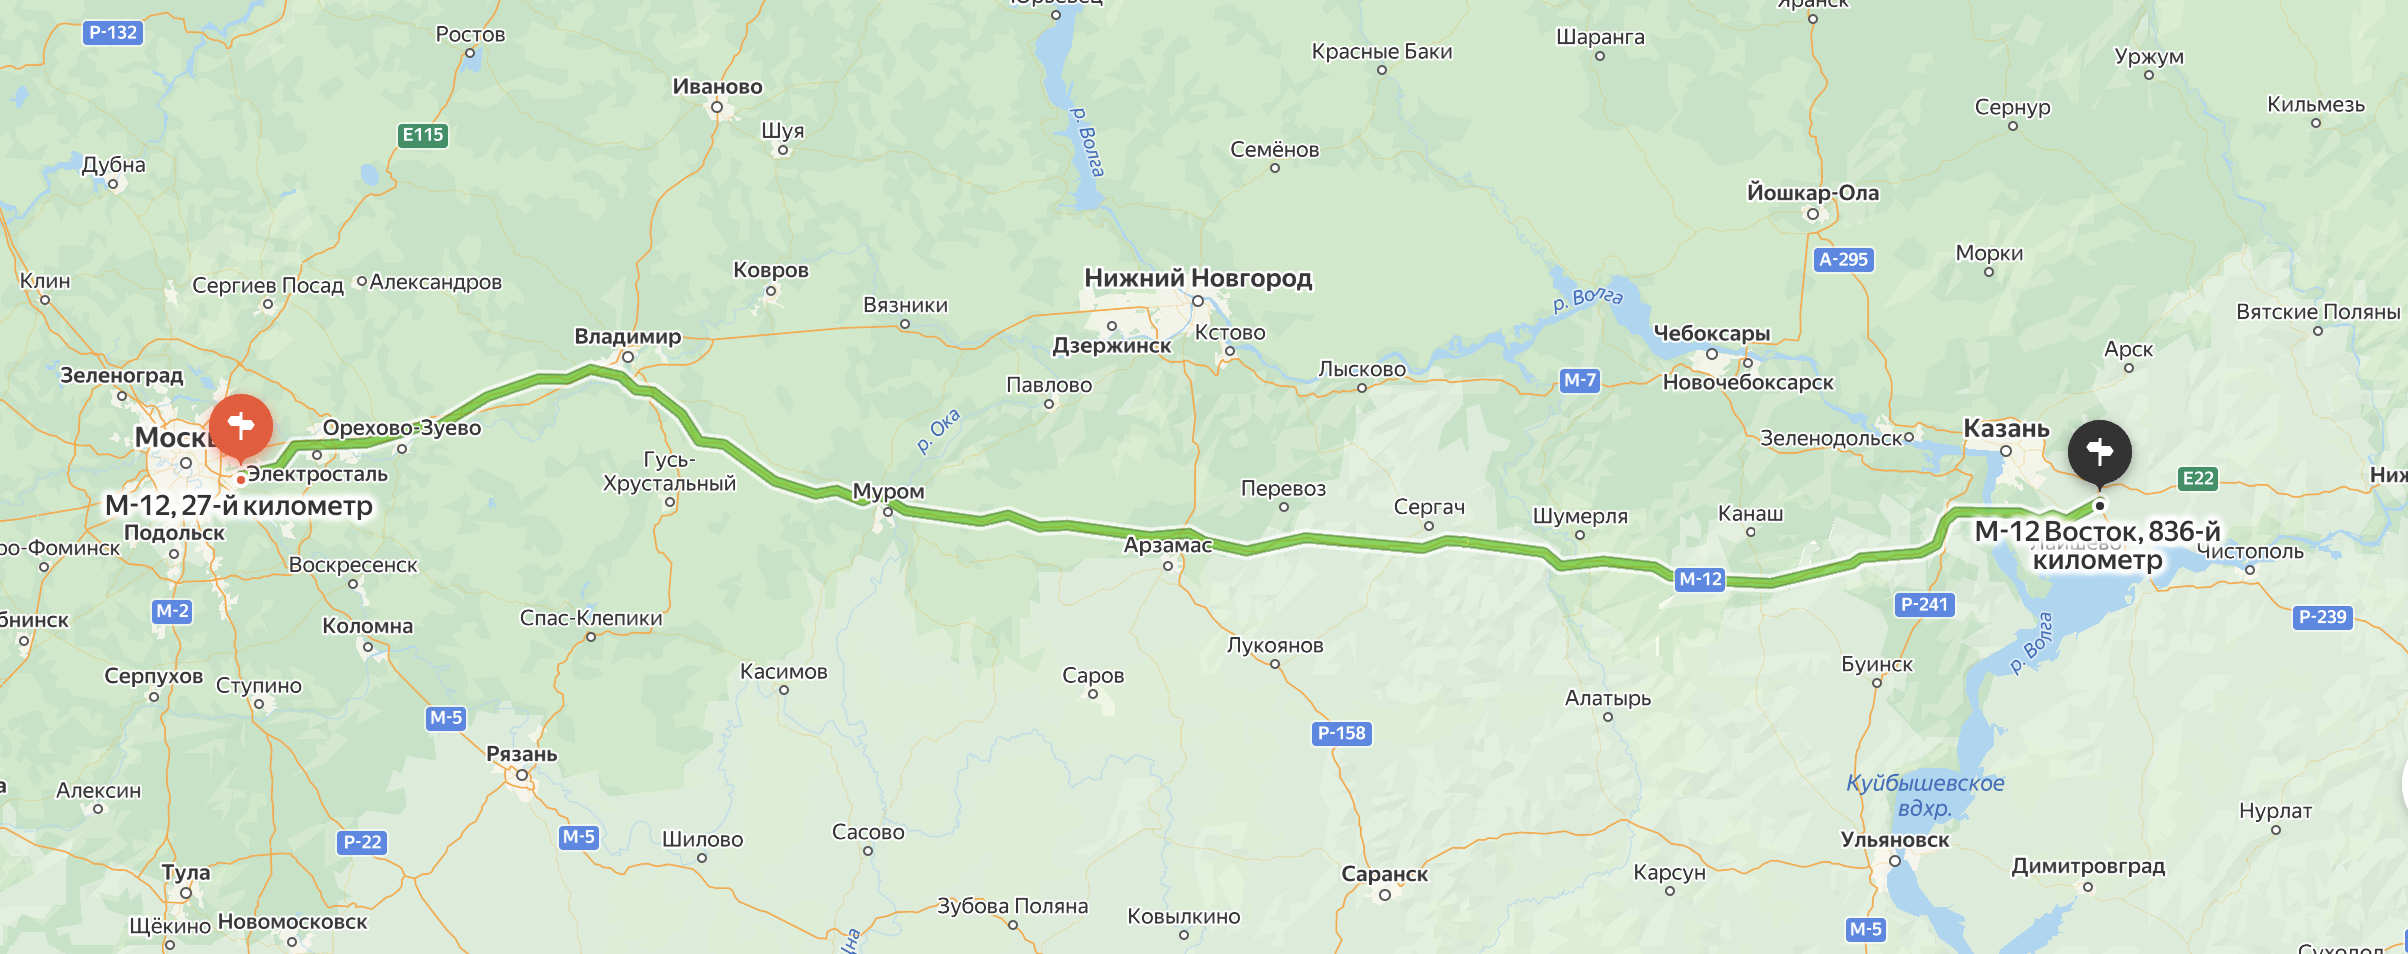 Дорога протяженностью 810 км, и вся она платная. Источник: «Яндекс карты»